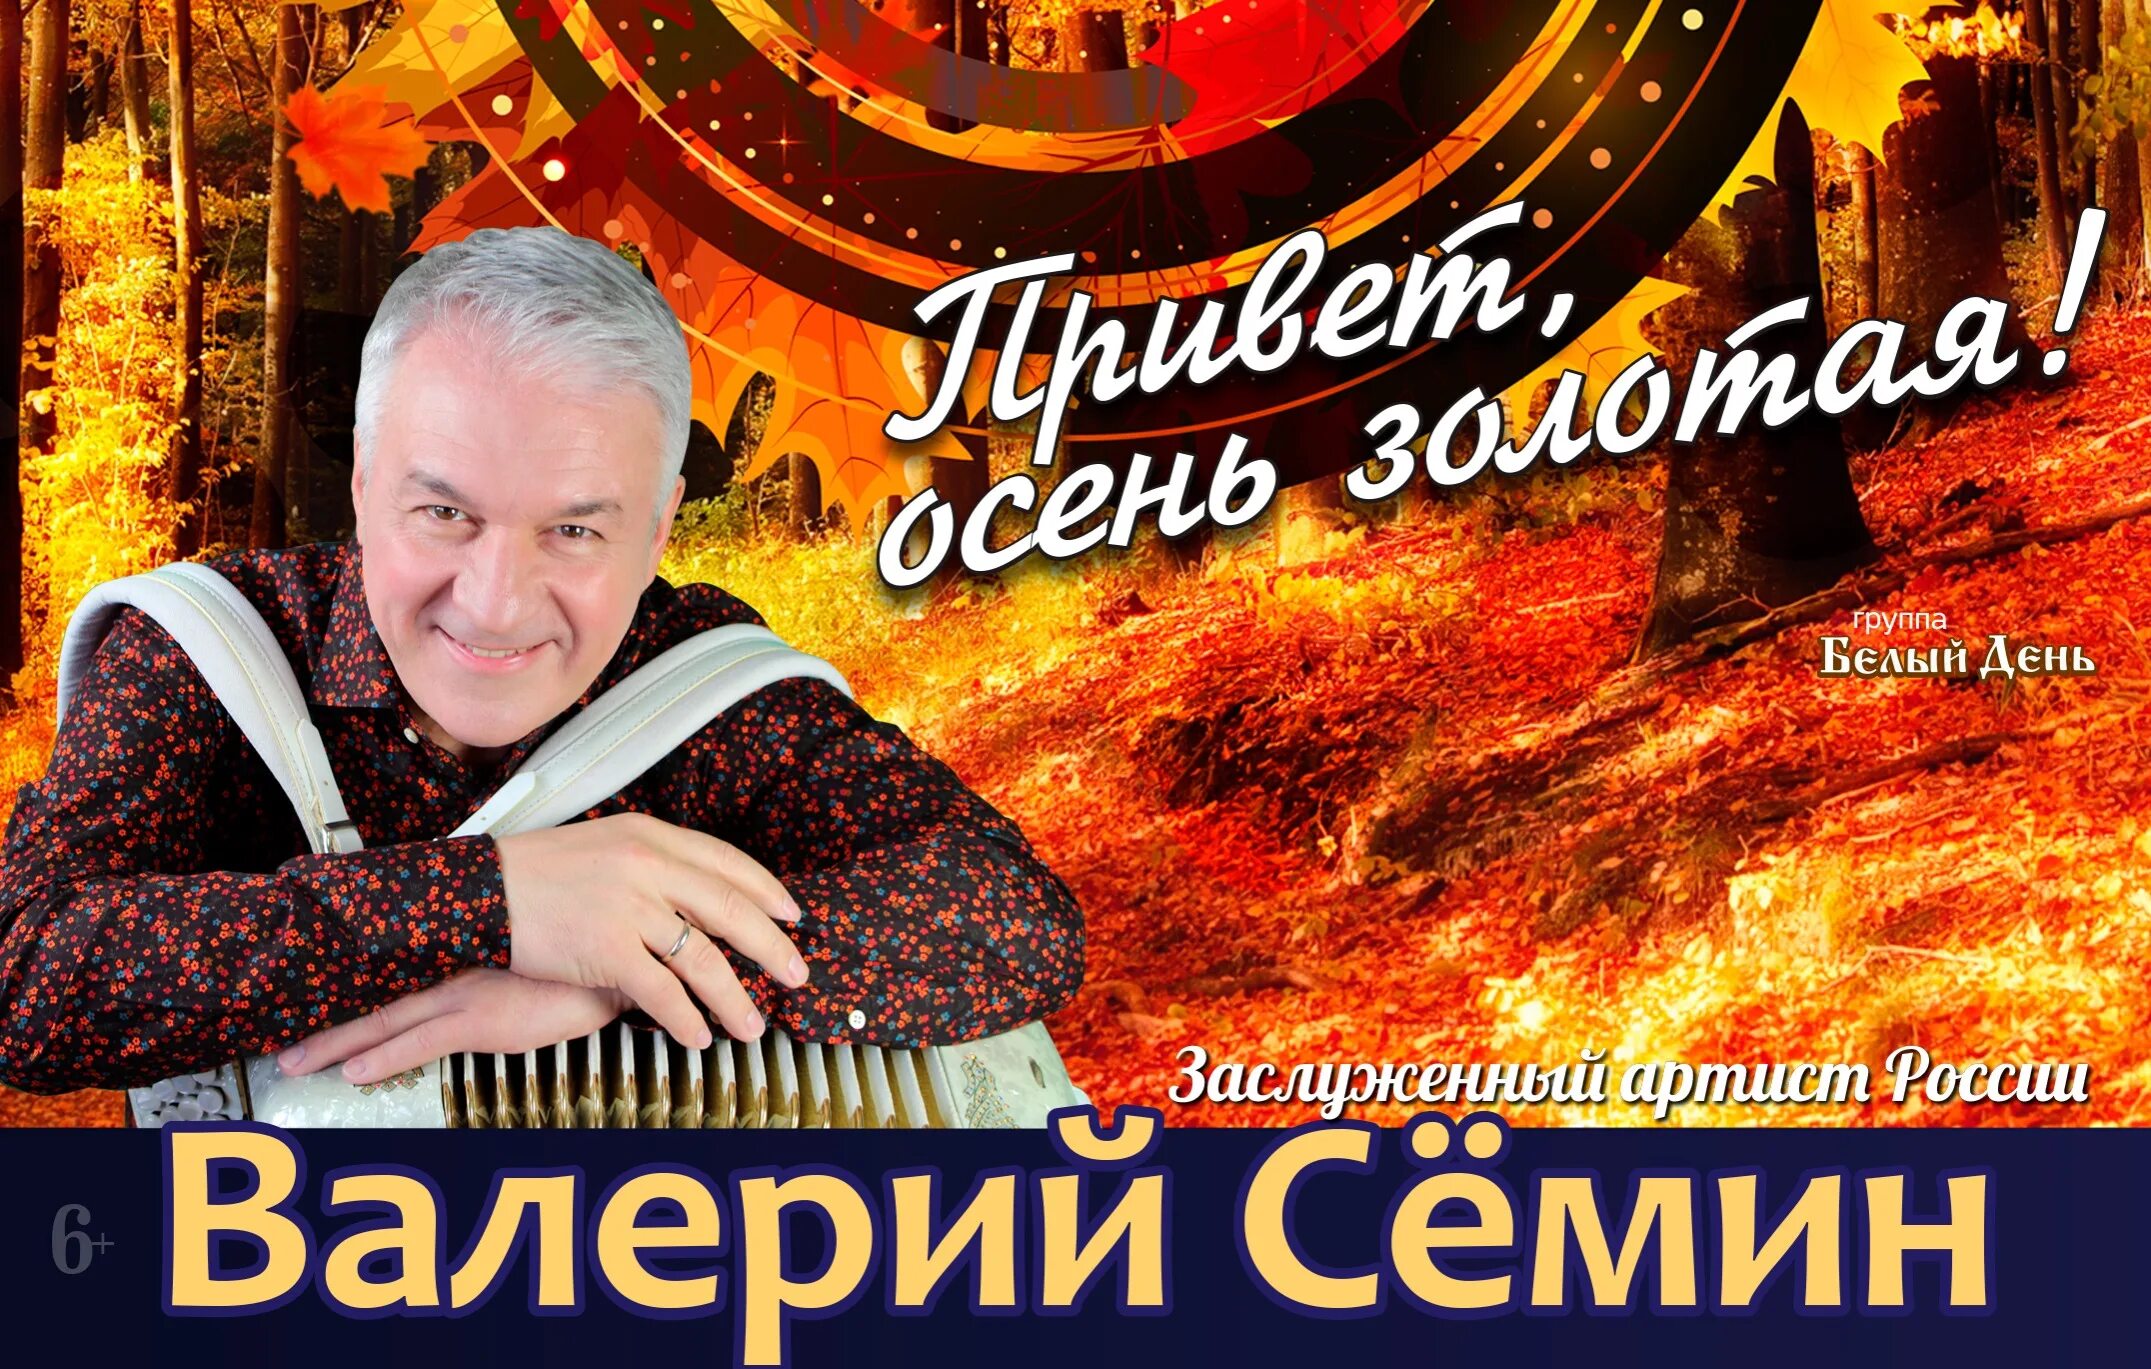 Цена билета на концерт семина. Семин ДК ГАЗ Нижний Новгород. Семин концерт.